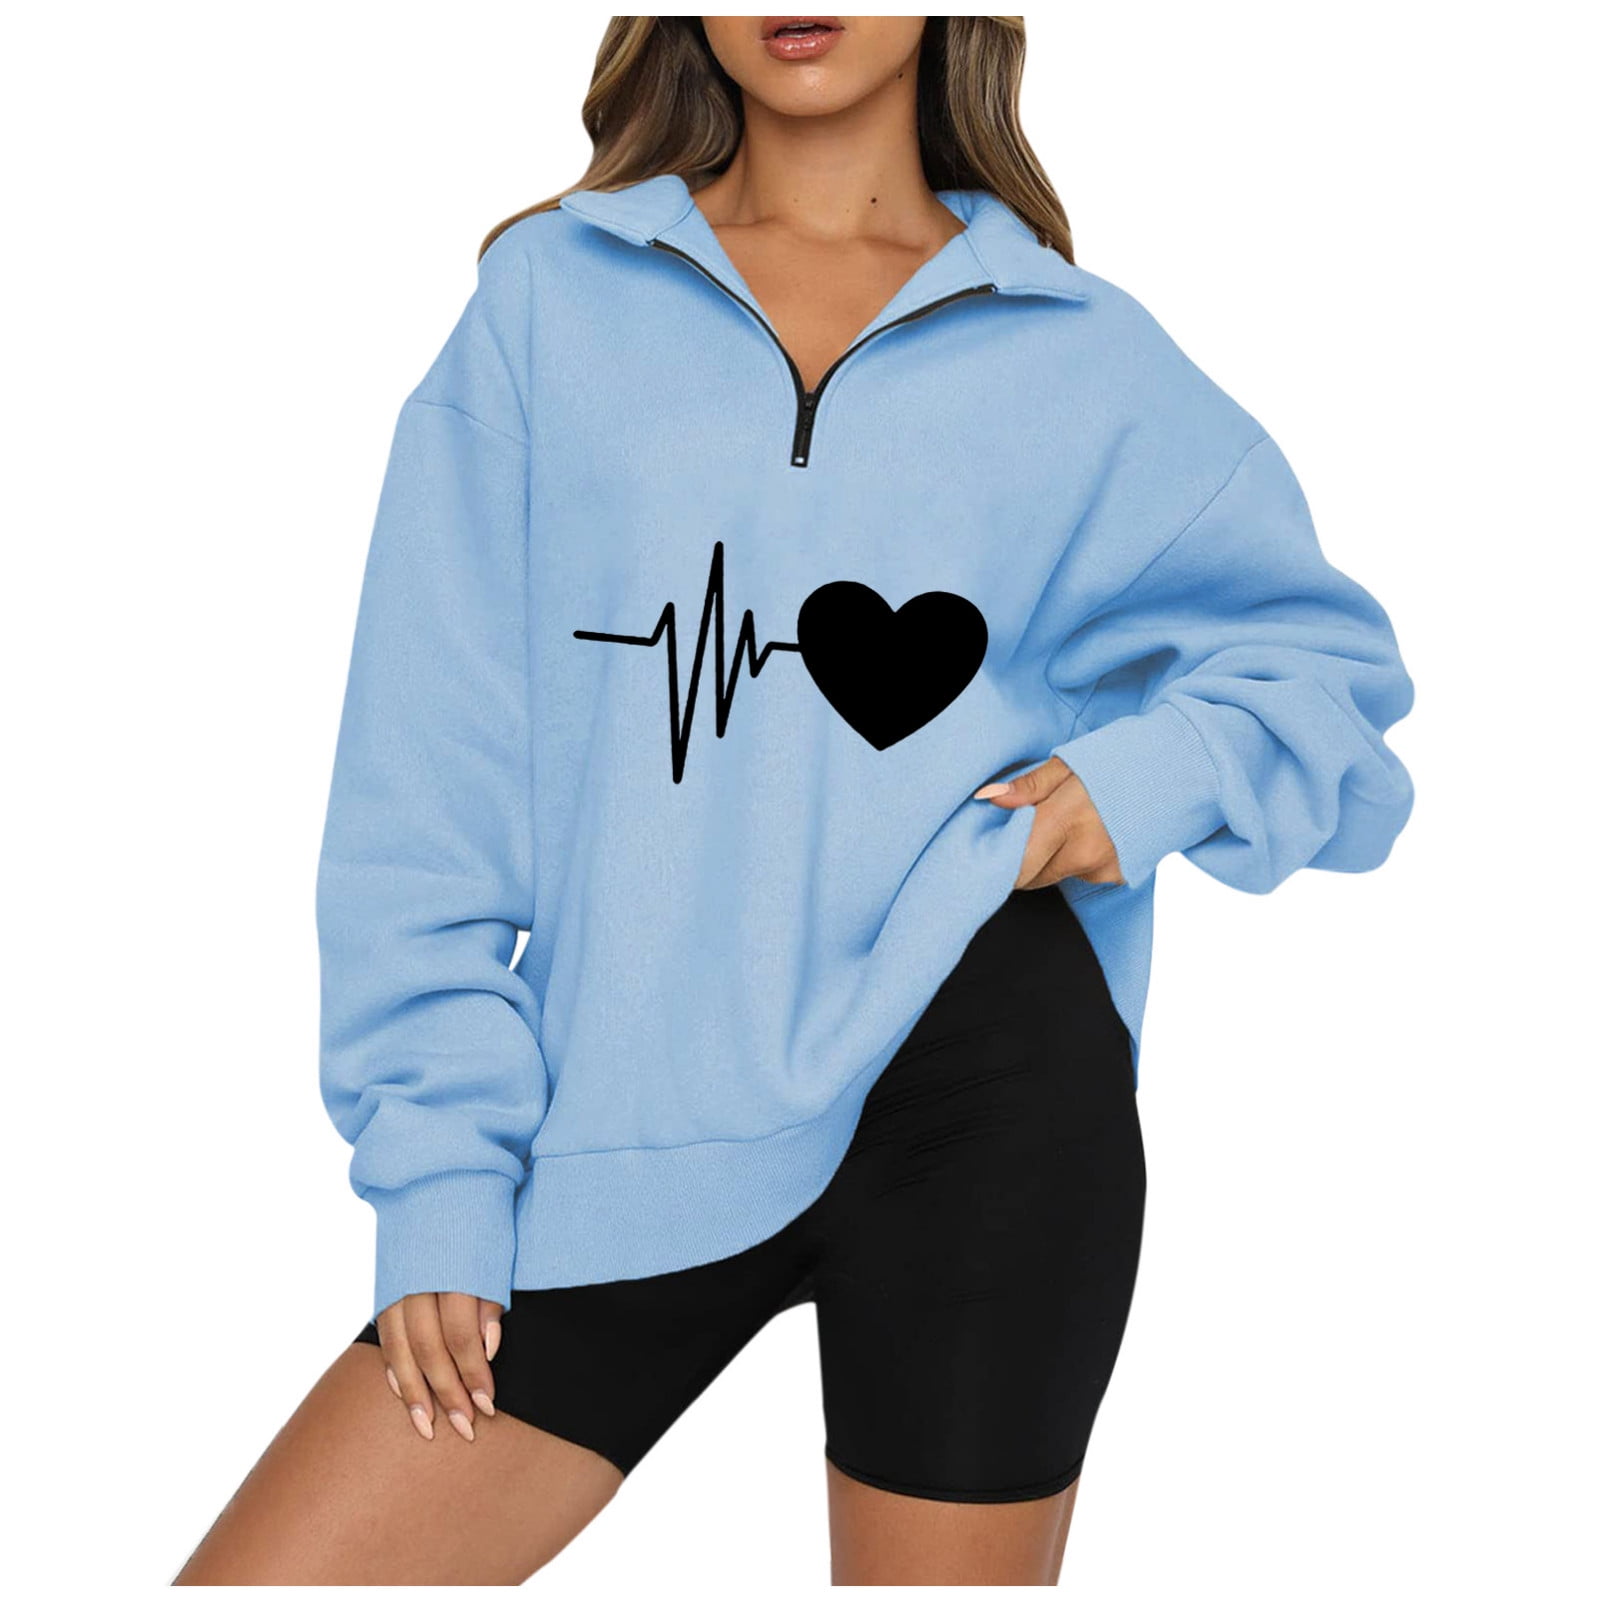 Yyeselk Oversized Sweatshirts for Women Quarter Zip Up ECG Graphic Fleece  Casual Sweatshirt Long Sleeve Half Zip Comfy Loose Drop Shoulder Pullover  Tops Gray XXL 